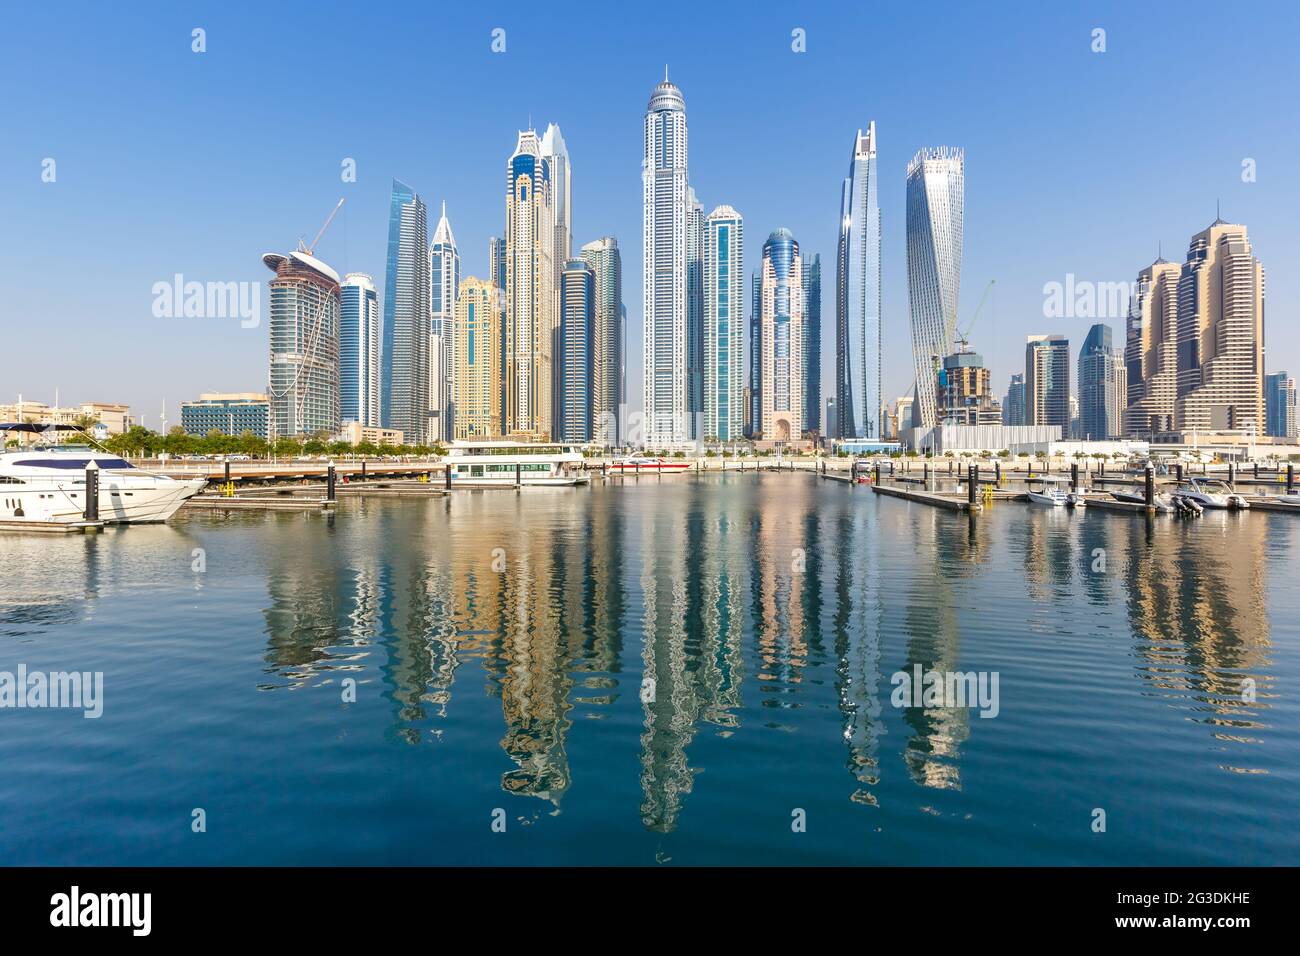 El puerto deportivo de Dubai y la arquitectura del horizonte del puerto viajan en la ciudad de reflexión sobre el agua de los Emiratos Árabes Unidos Foto de stock